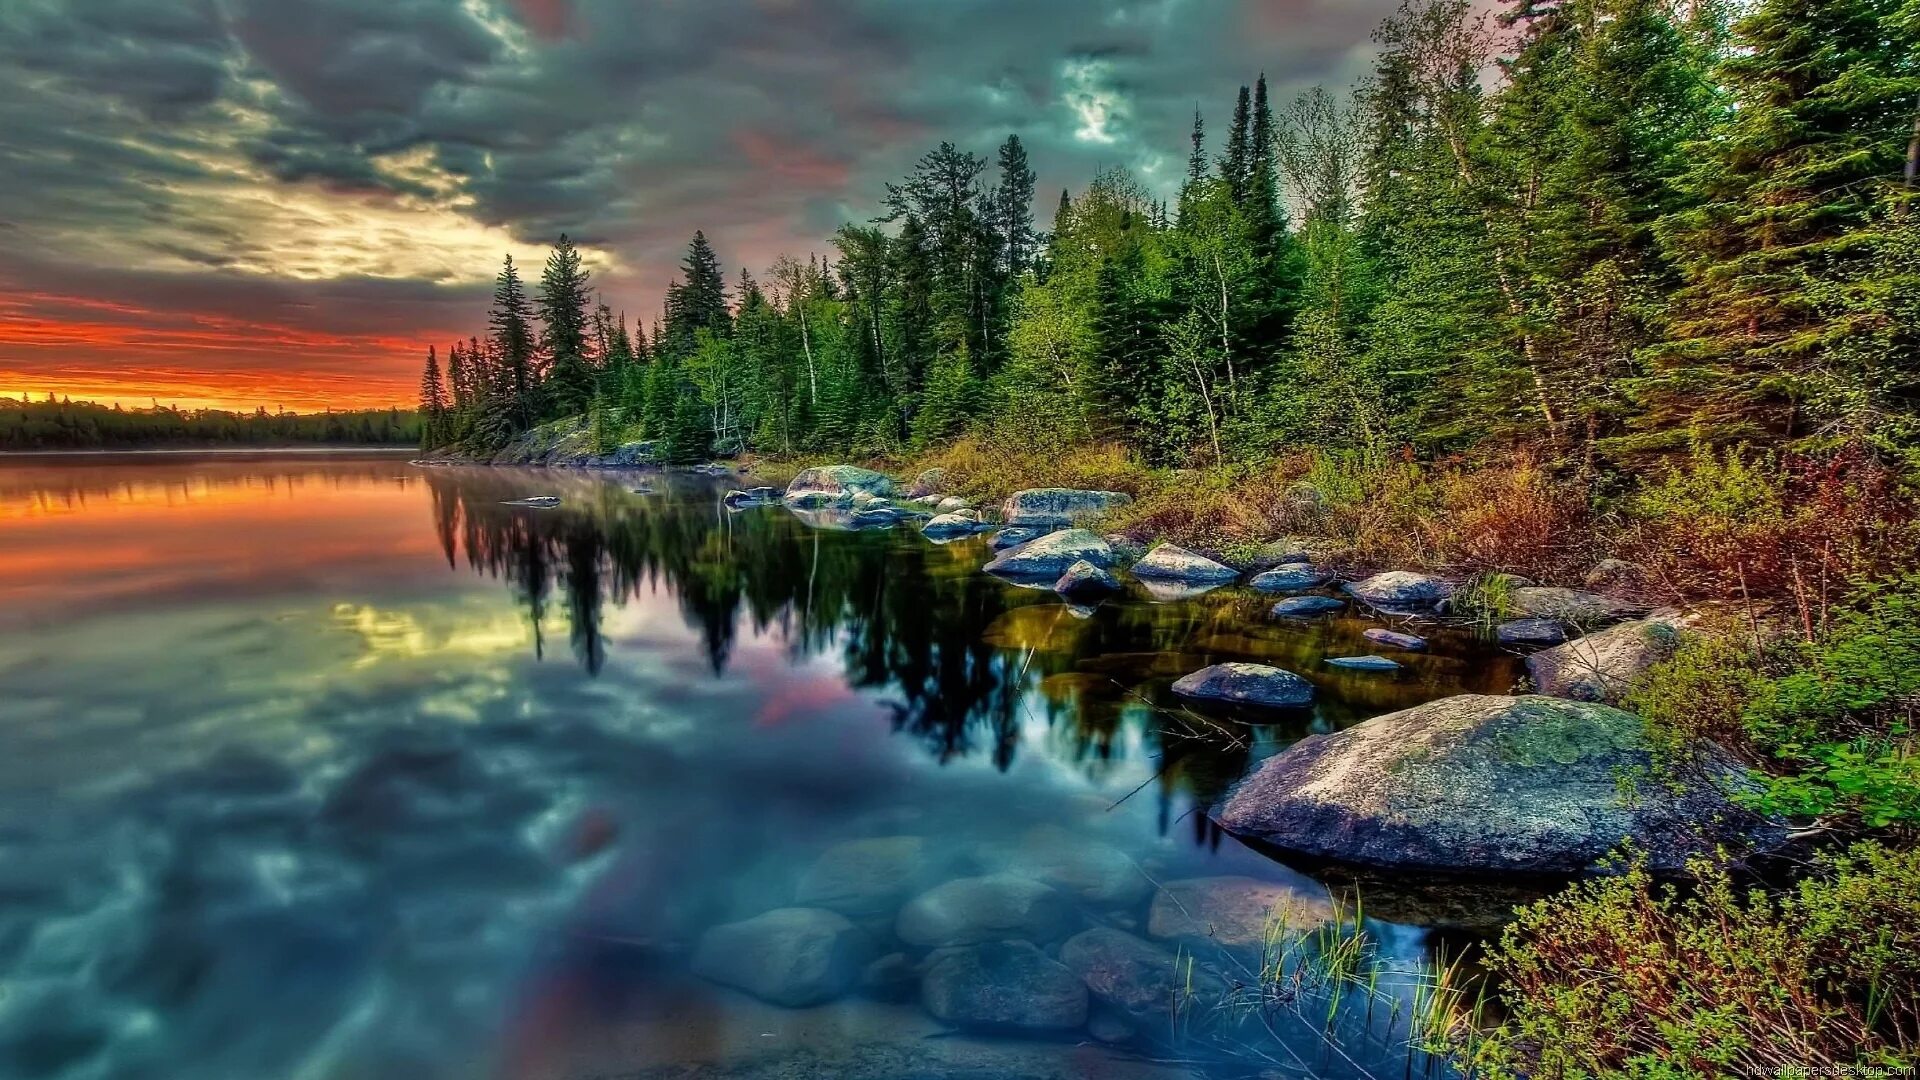 Обои на телефон озеро. Озеро Онтарио. Озеро Байкал. Красивая природа. Красивый пейзаж.